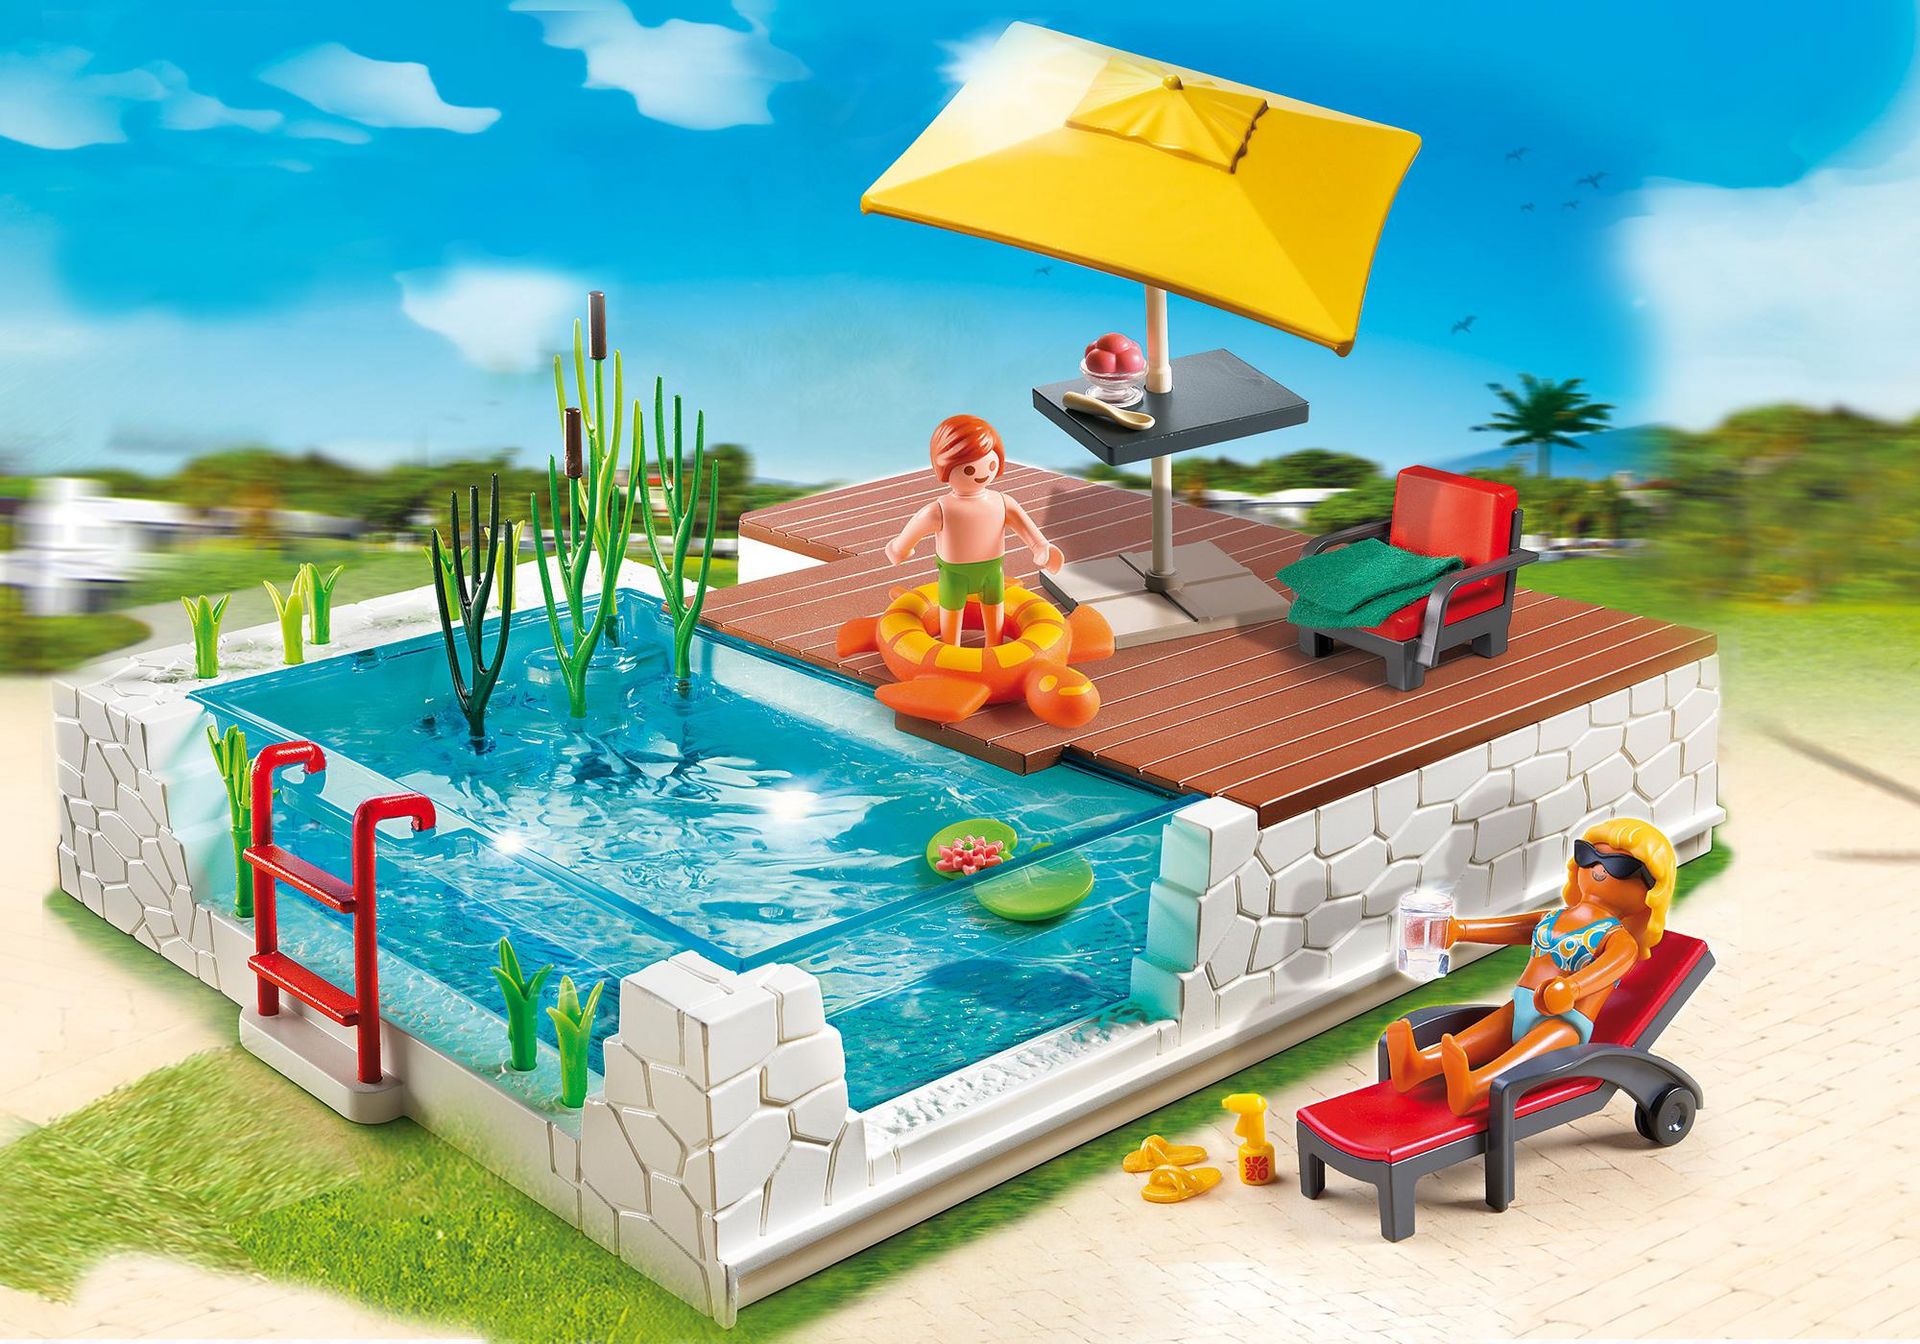 aus Set 4140 Playmobil Bodenplatte mit Rasen und Pool Schwimmbecken 